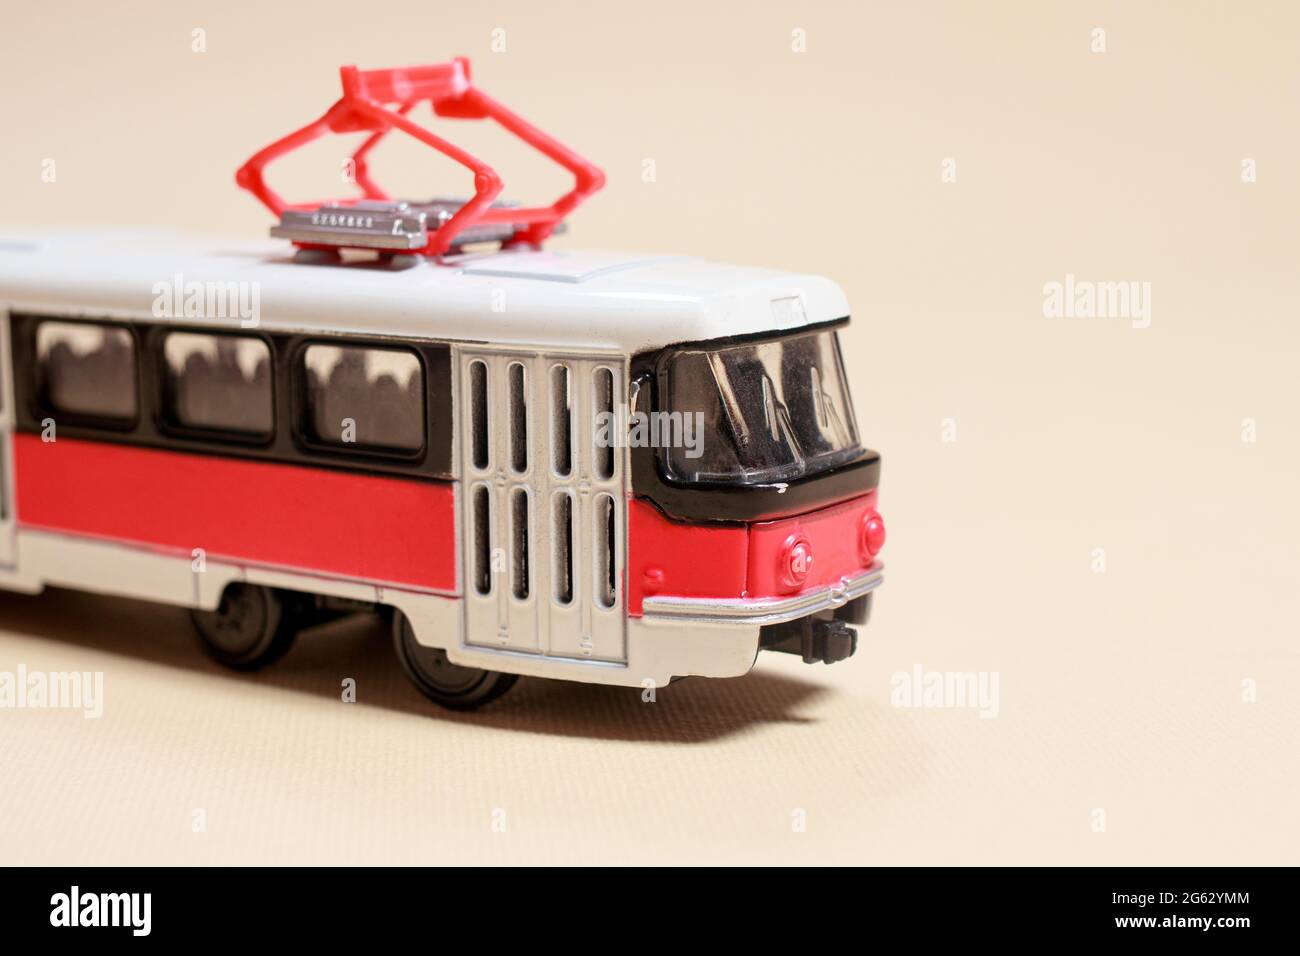 Kinderspielzeug rot weiß Tram auf einem beigen Hintergrund Kopie Platz für Text. Spielzeug für einen Spielwarenladen, Autos für einen Jungen. Stockfoto